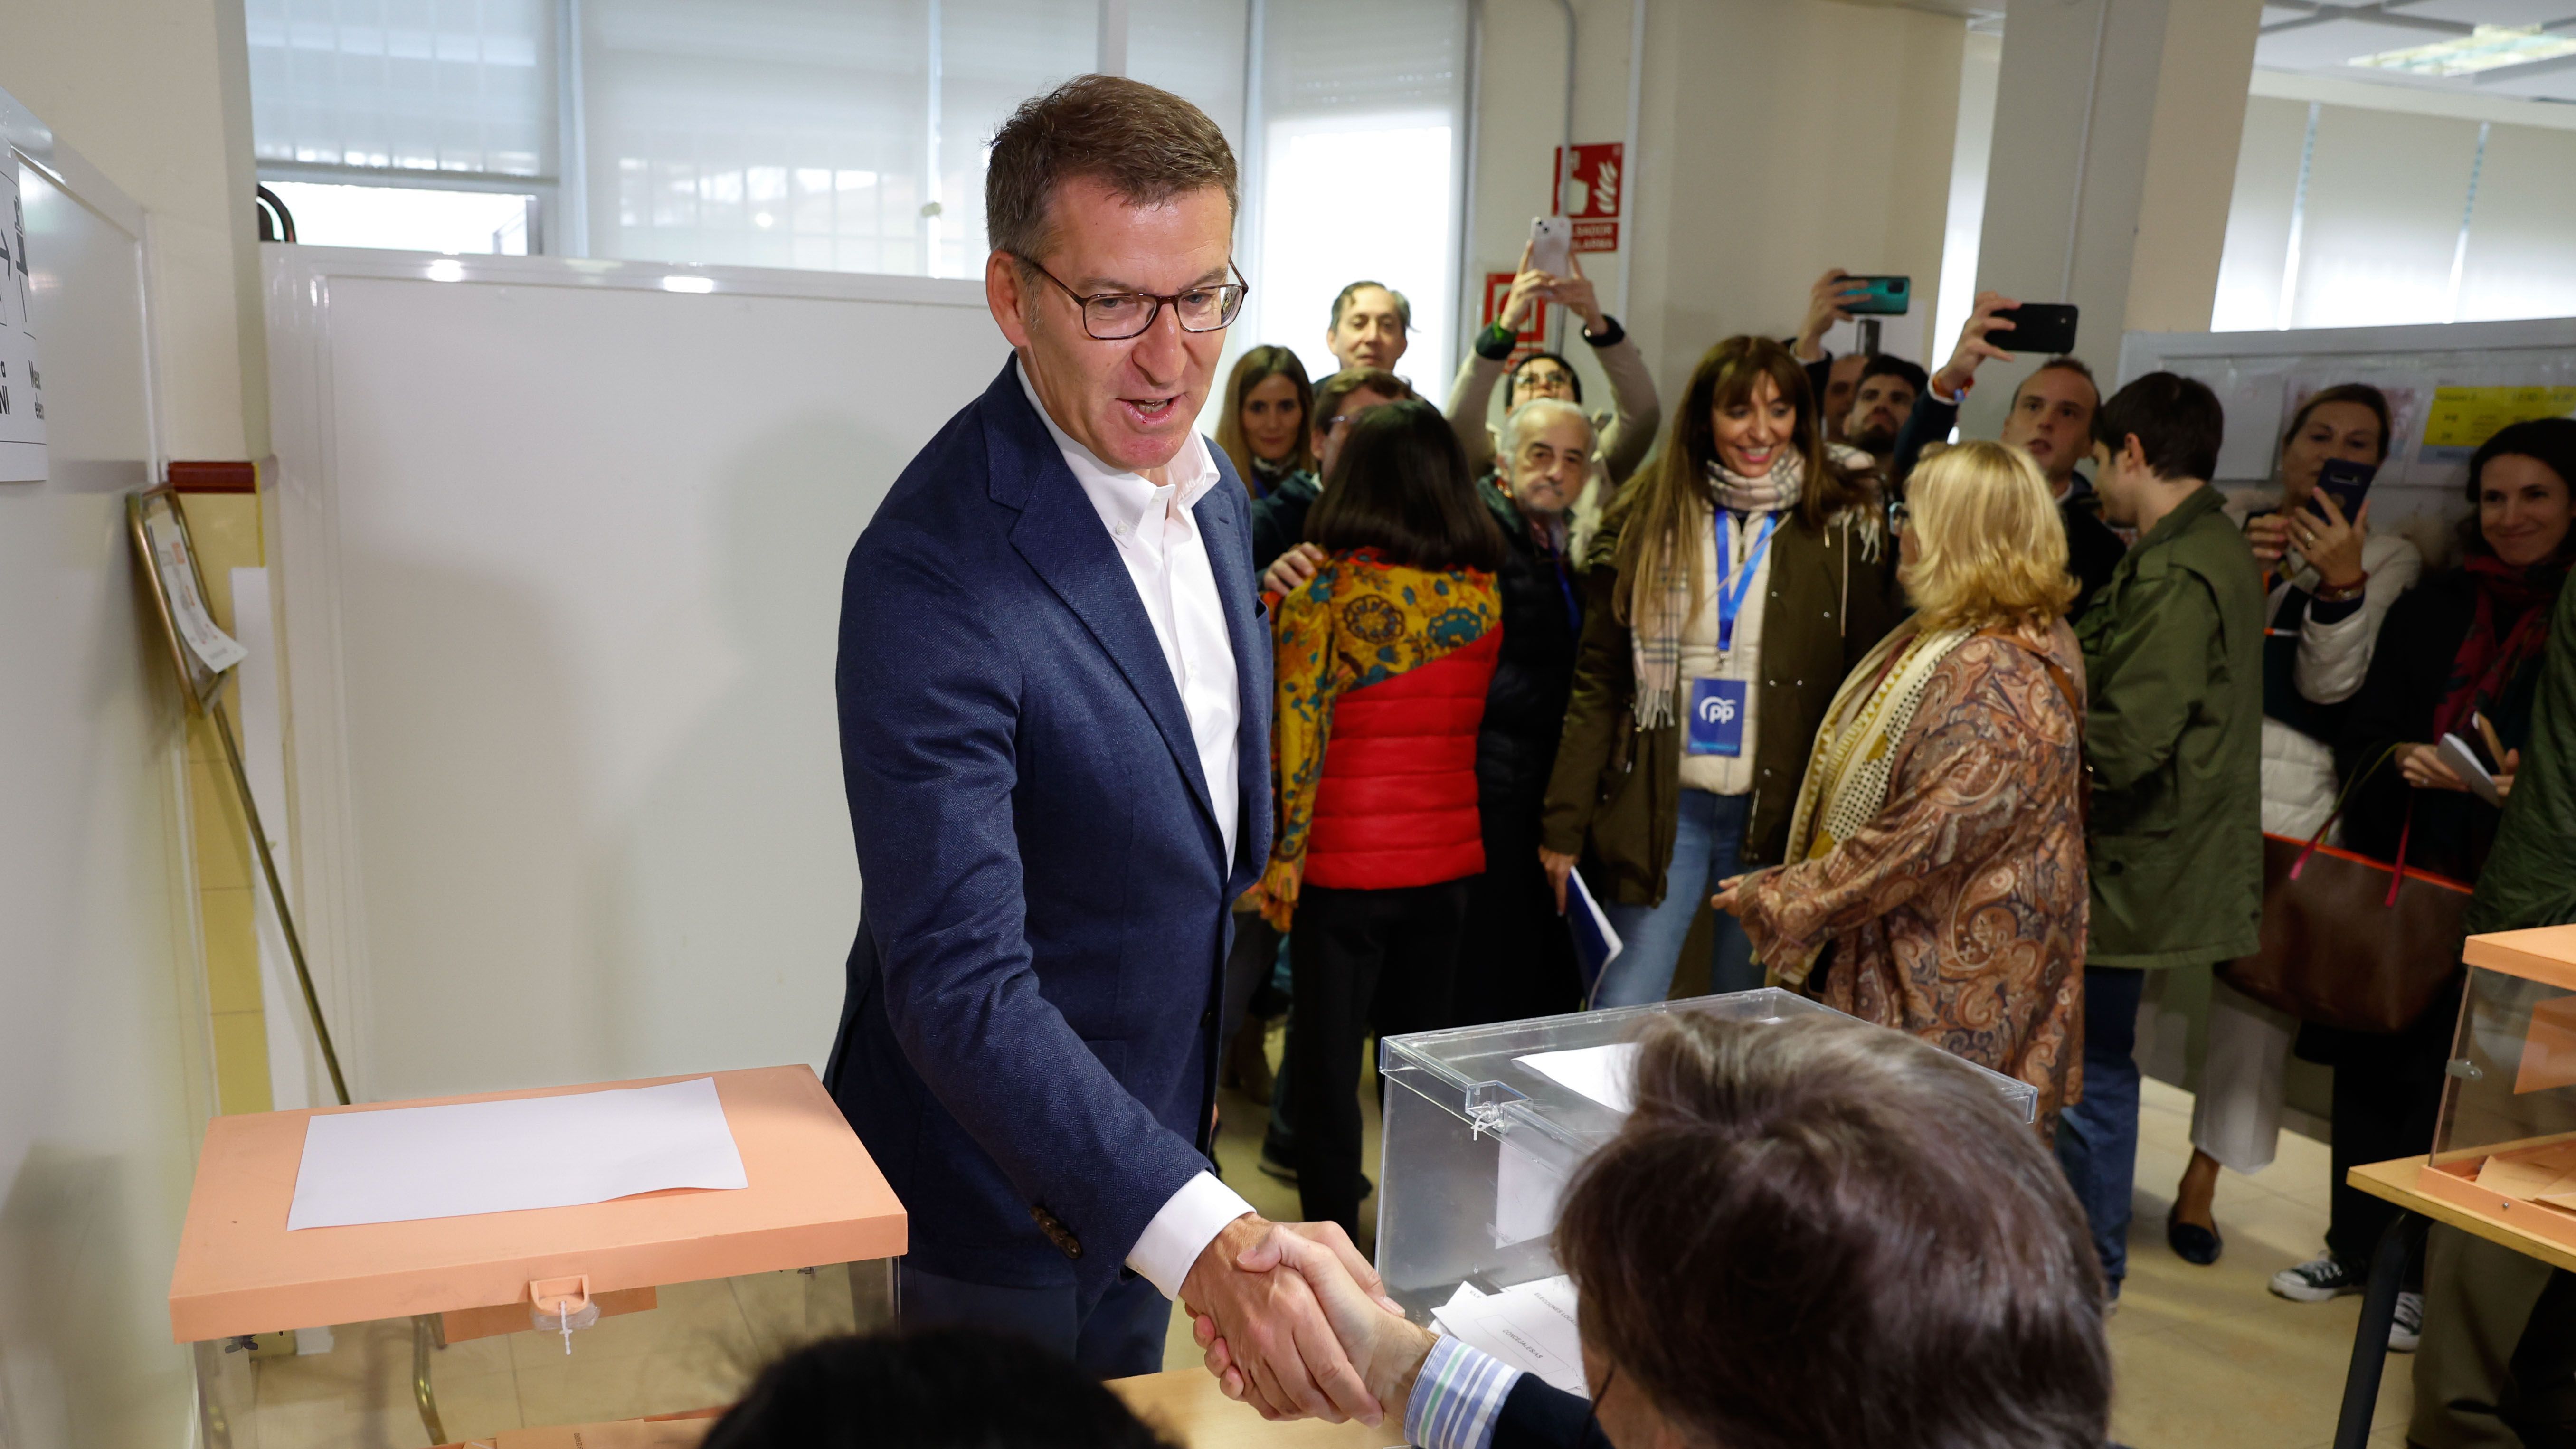 Elecciones 28M: Alberto Nuñez Feijoó llama a votar "masivamente" para "el futuro de nuestro país"